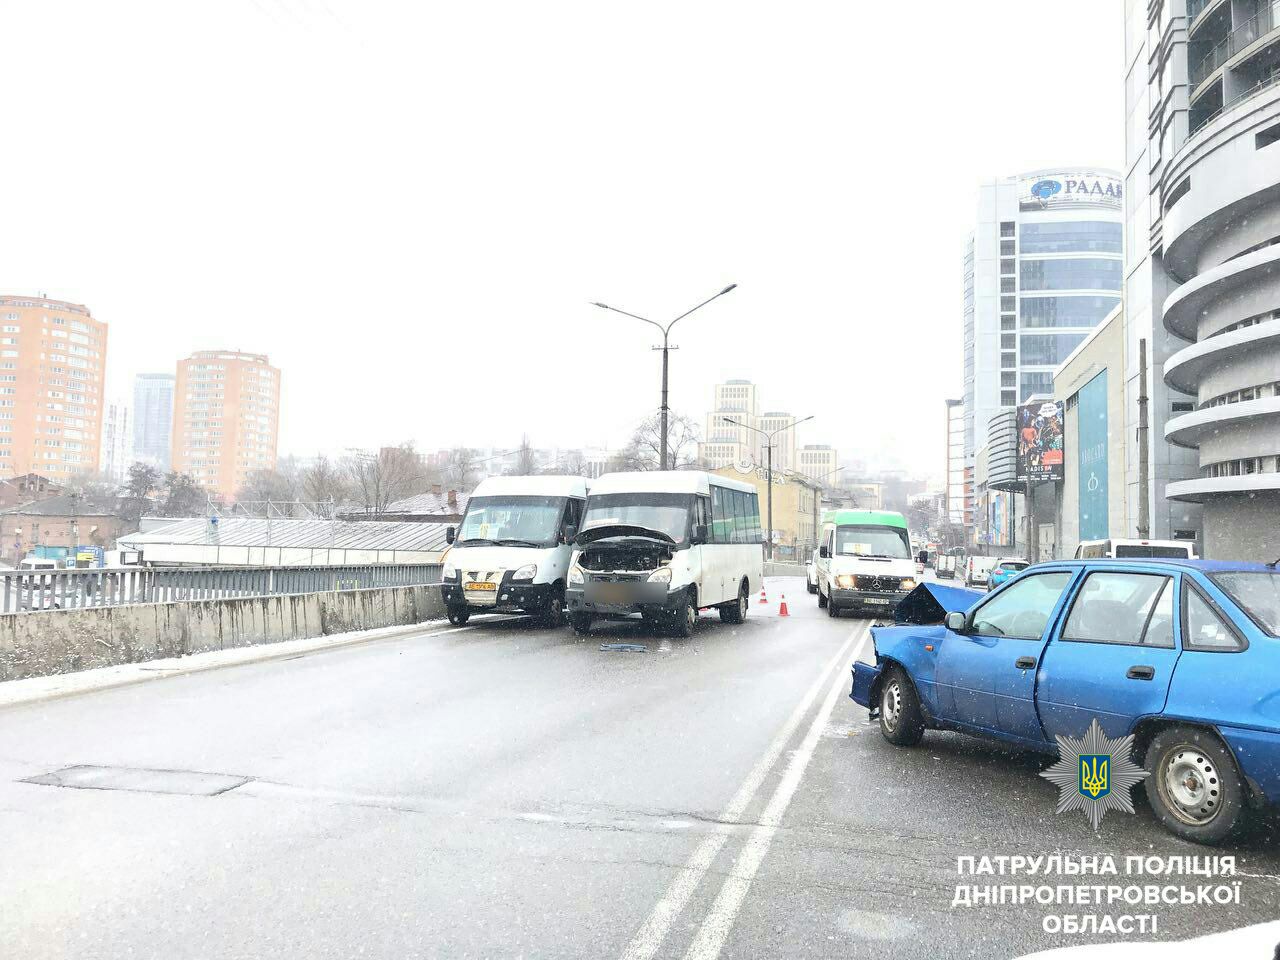 Новость - События - ДТП на Новом мосту: маршрутка влетела в легковушку